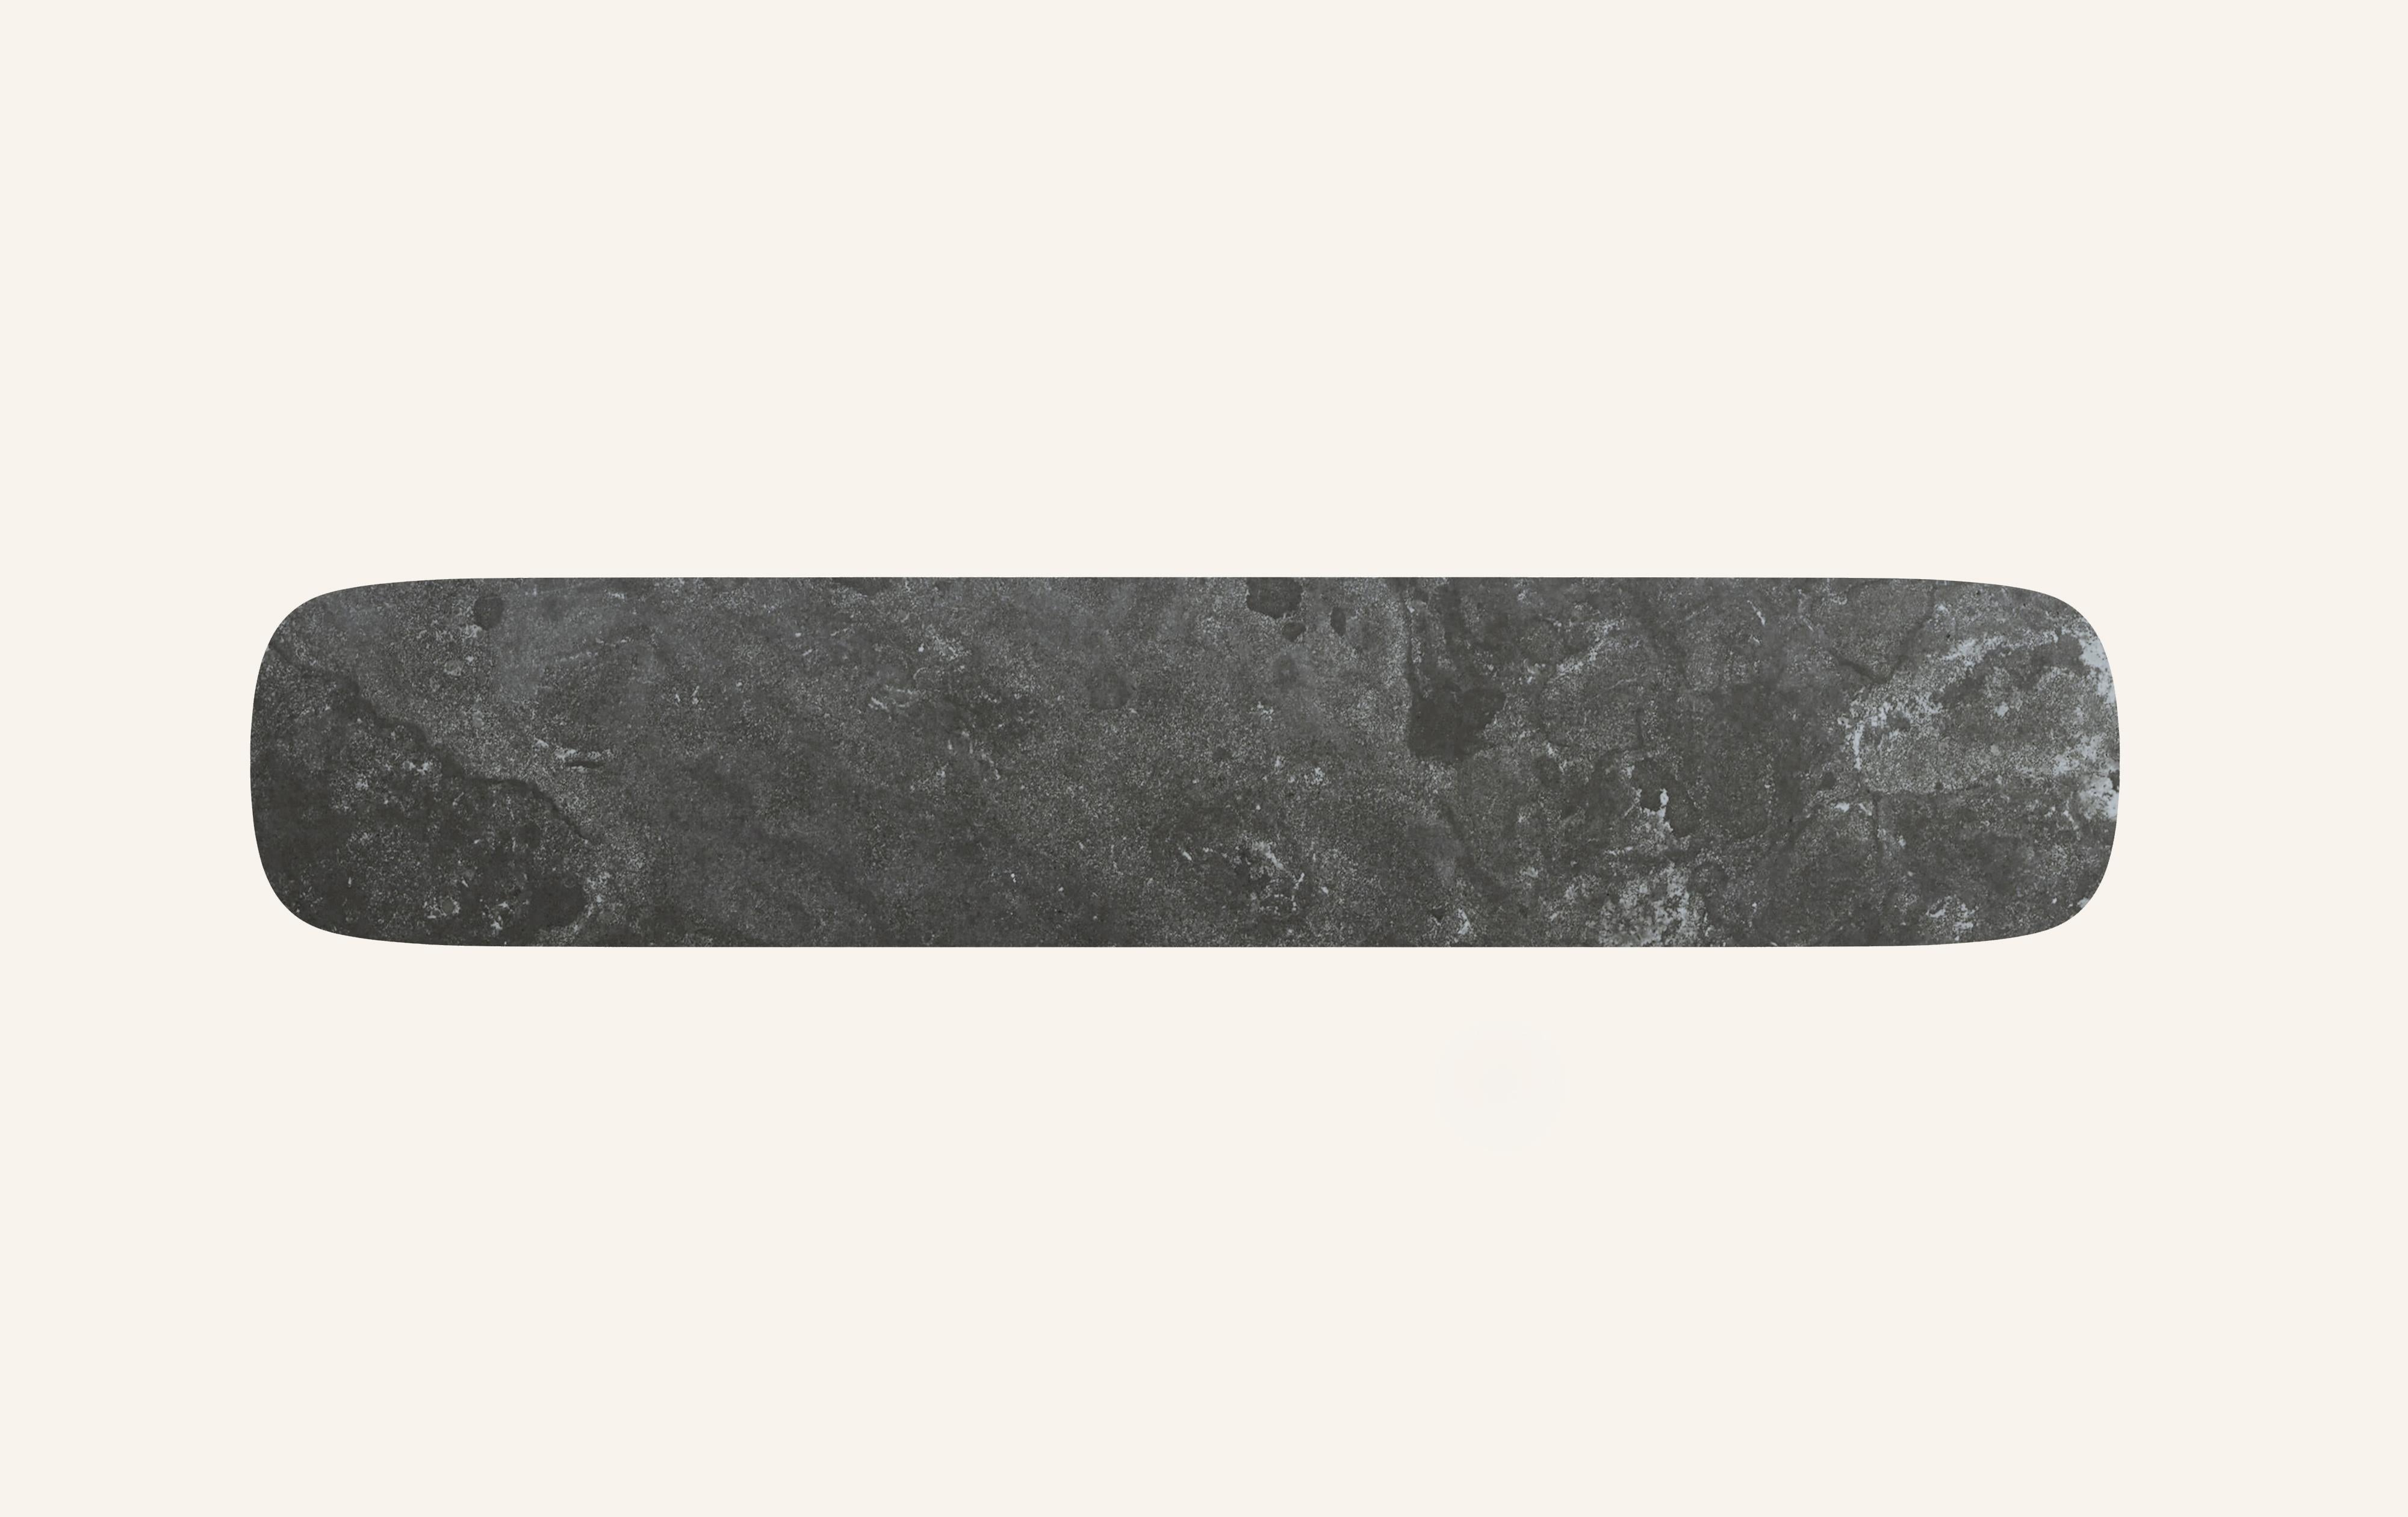 FORM(LA) Cono Console Table 84”L x 15”W x 33”H Nero Petite Granite In New Condition For Sale In Los Angeles, CA